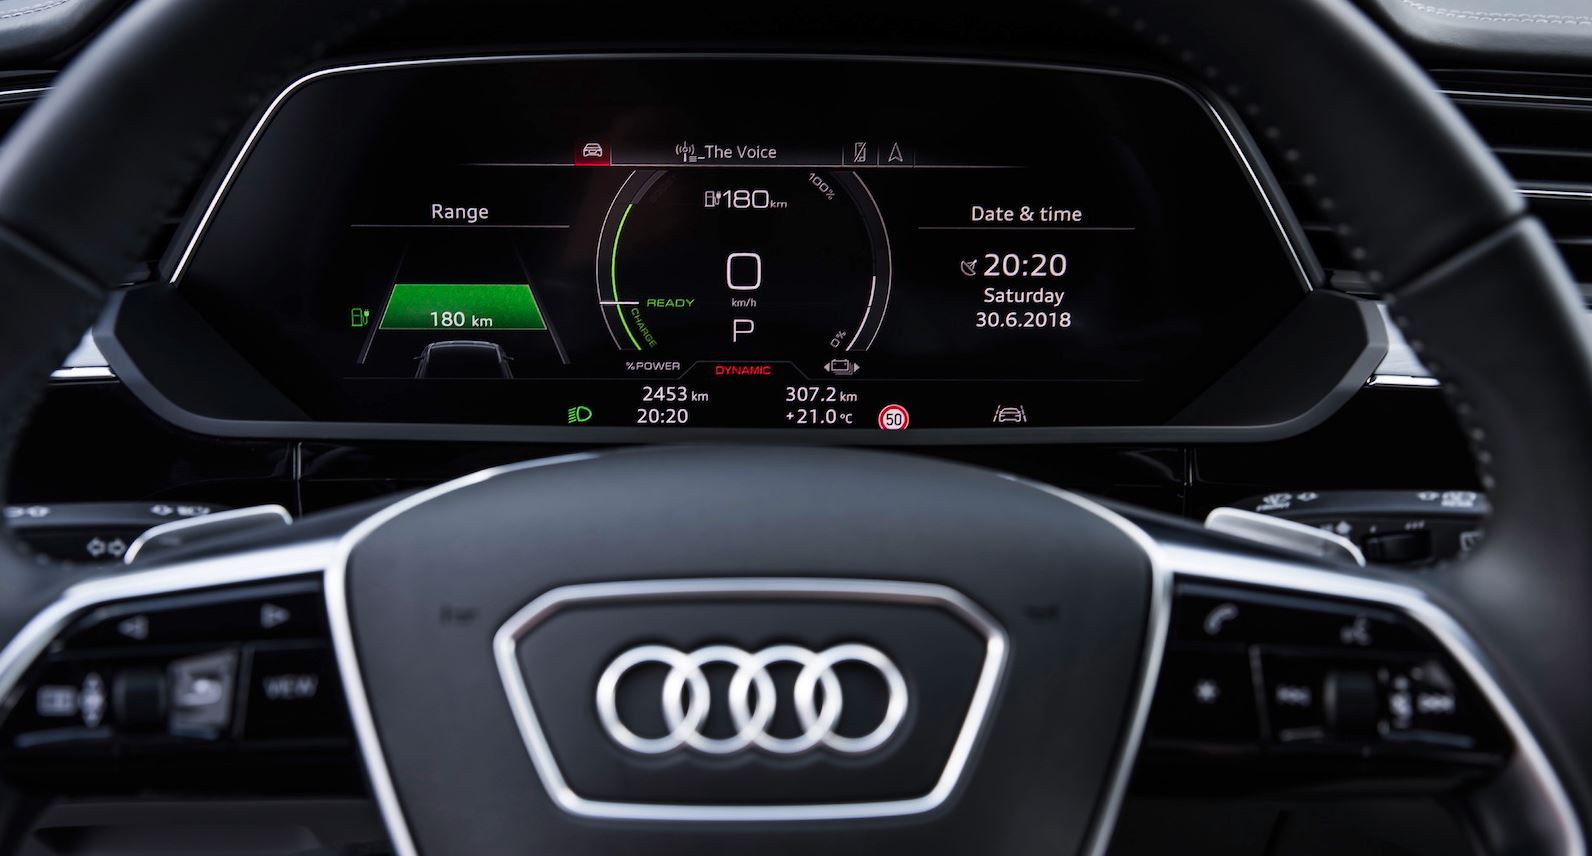 Audi S E Tron Ev Suv Interior Gets Revealed In Copenhagen